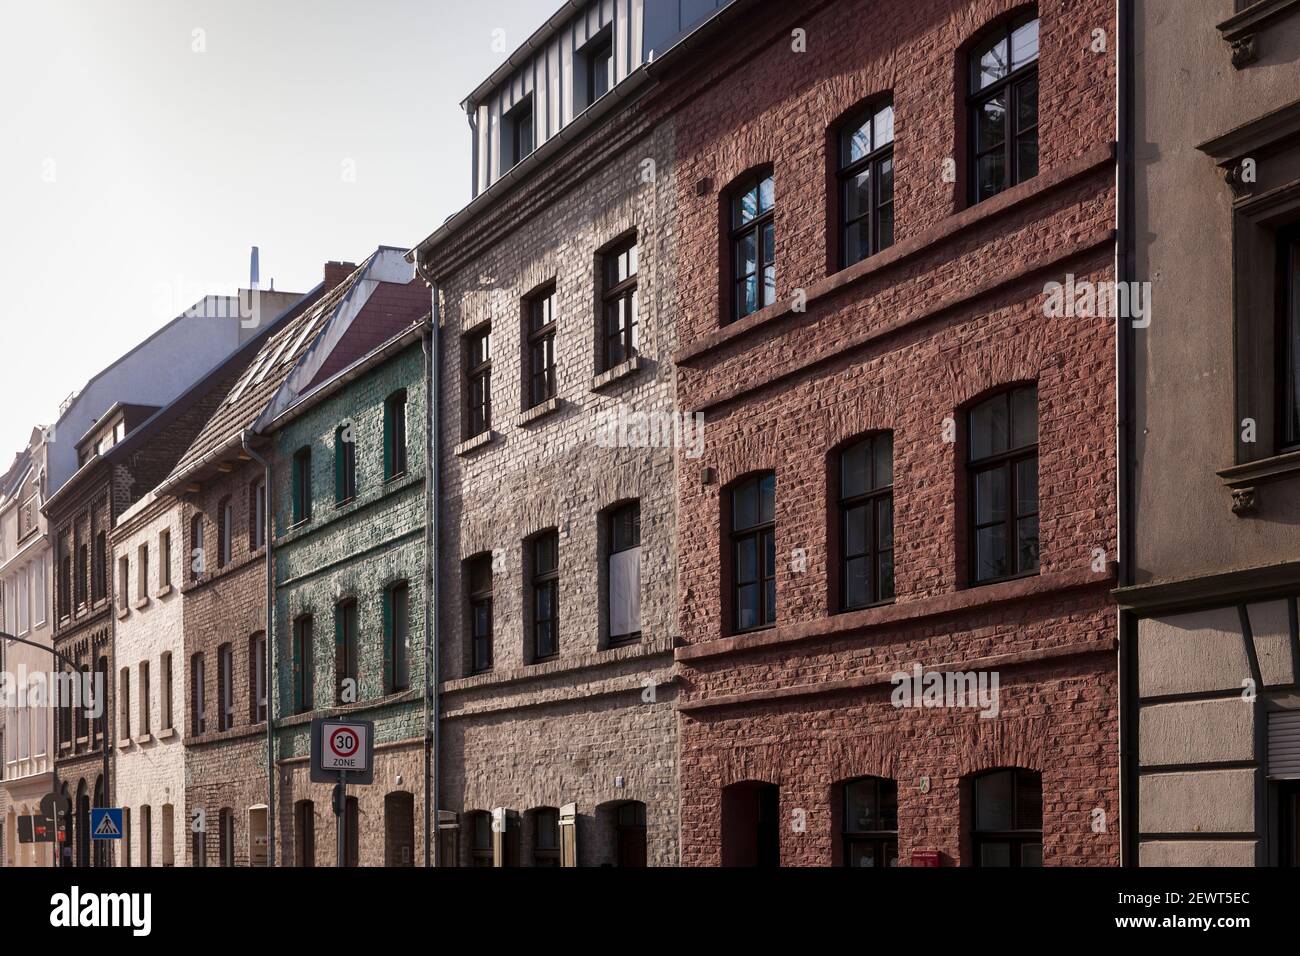 Anciens bâtiments sur la rue Alteburger 182 - 190 dans le quartier Bayenthal, construit autour de 1860, Cologne, Allemagne. Altbauten an der Alteburger Strasse 182 Banque D'Images